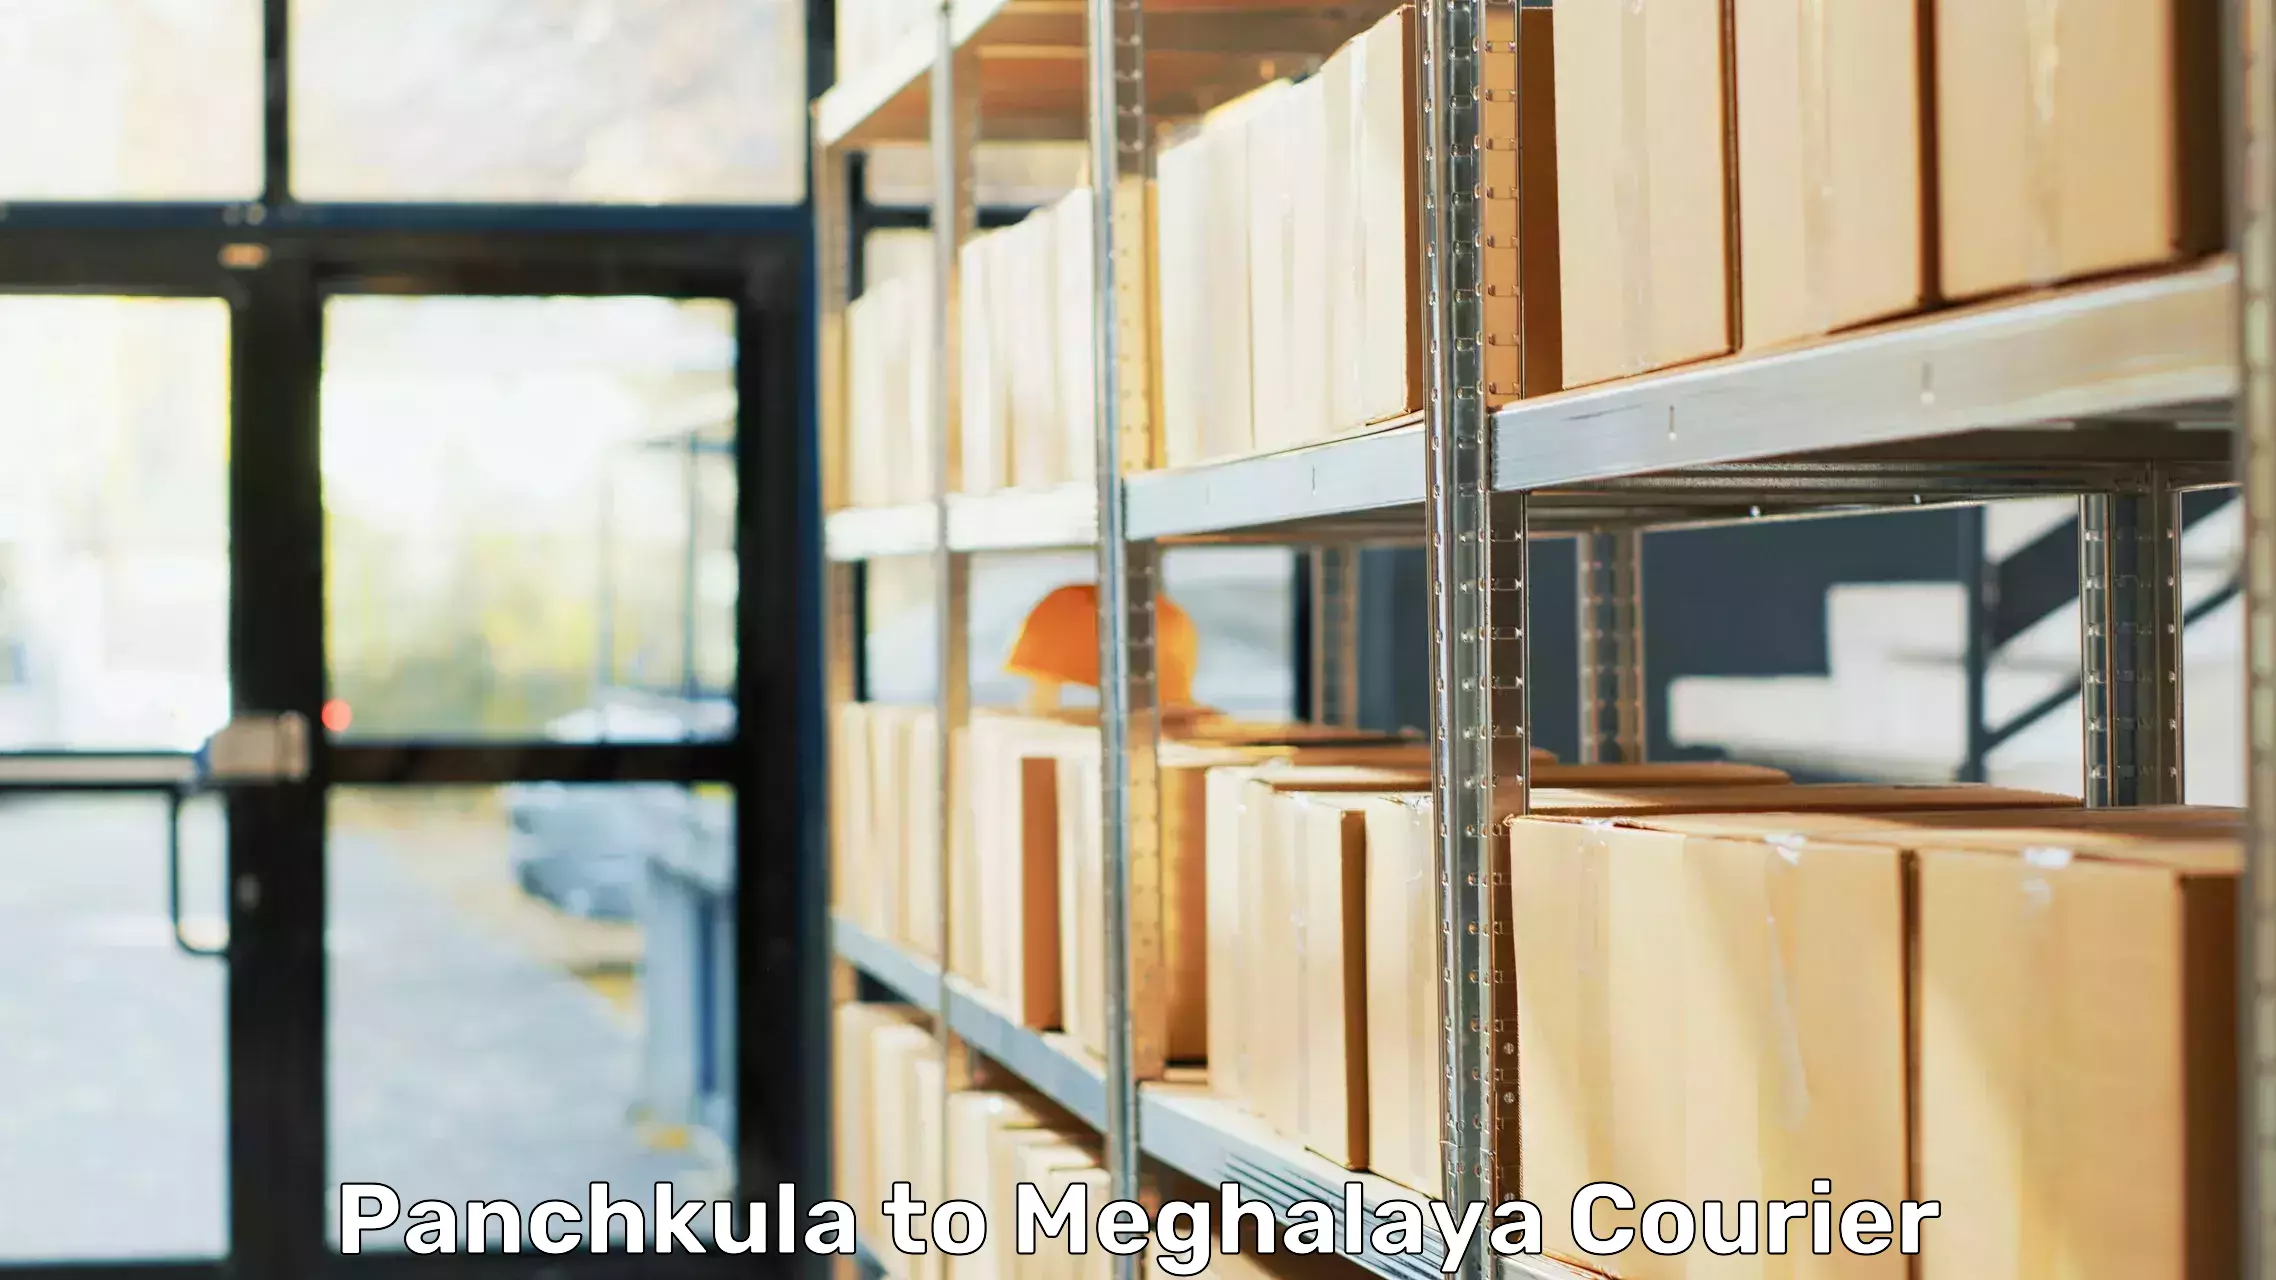 Furniture transport experts Panchkula to Meghalaya